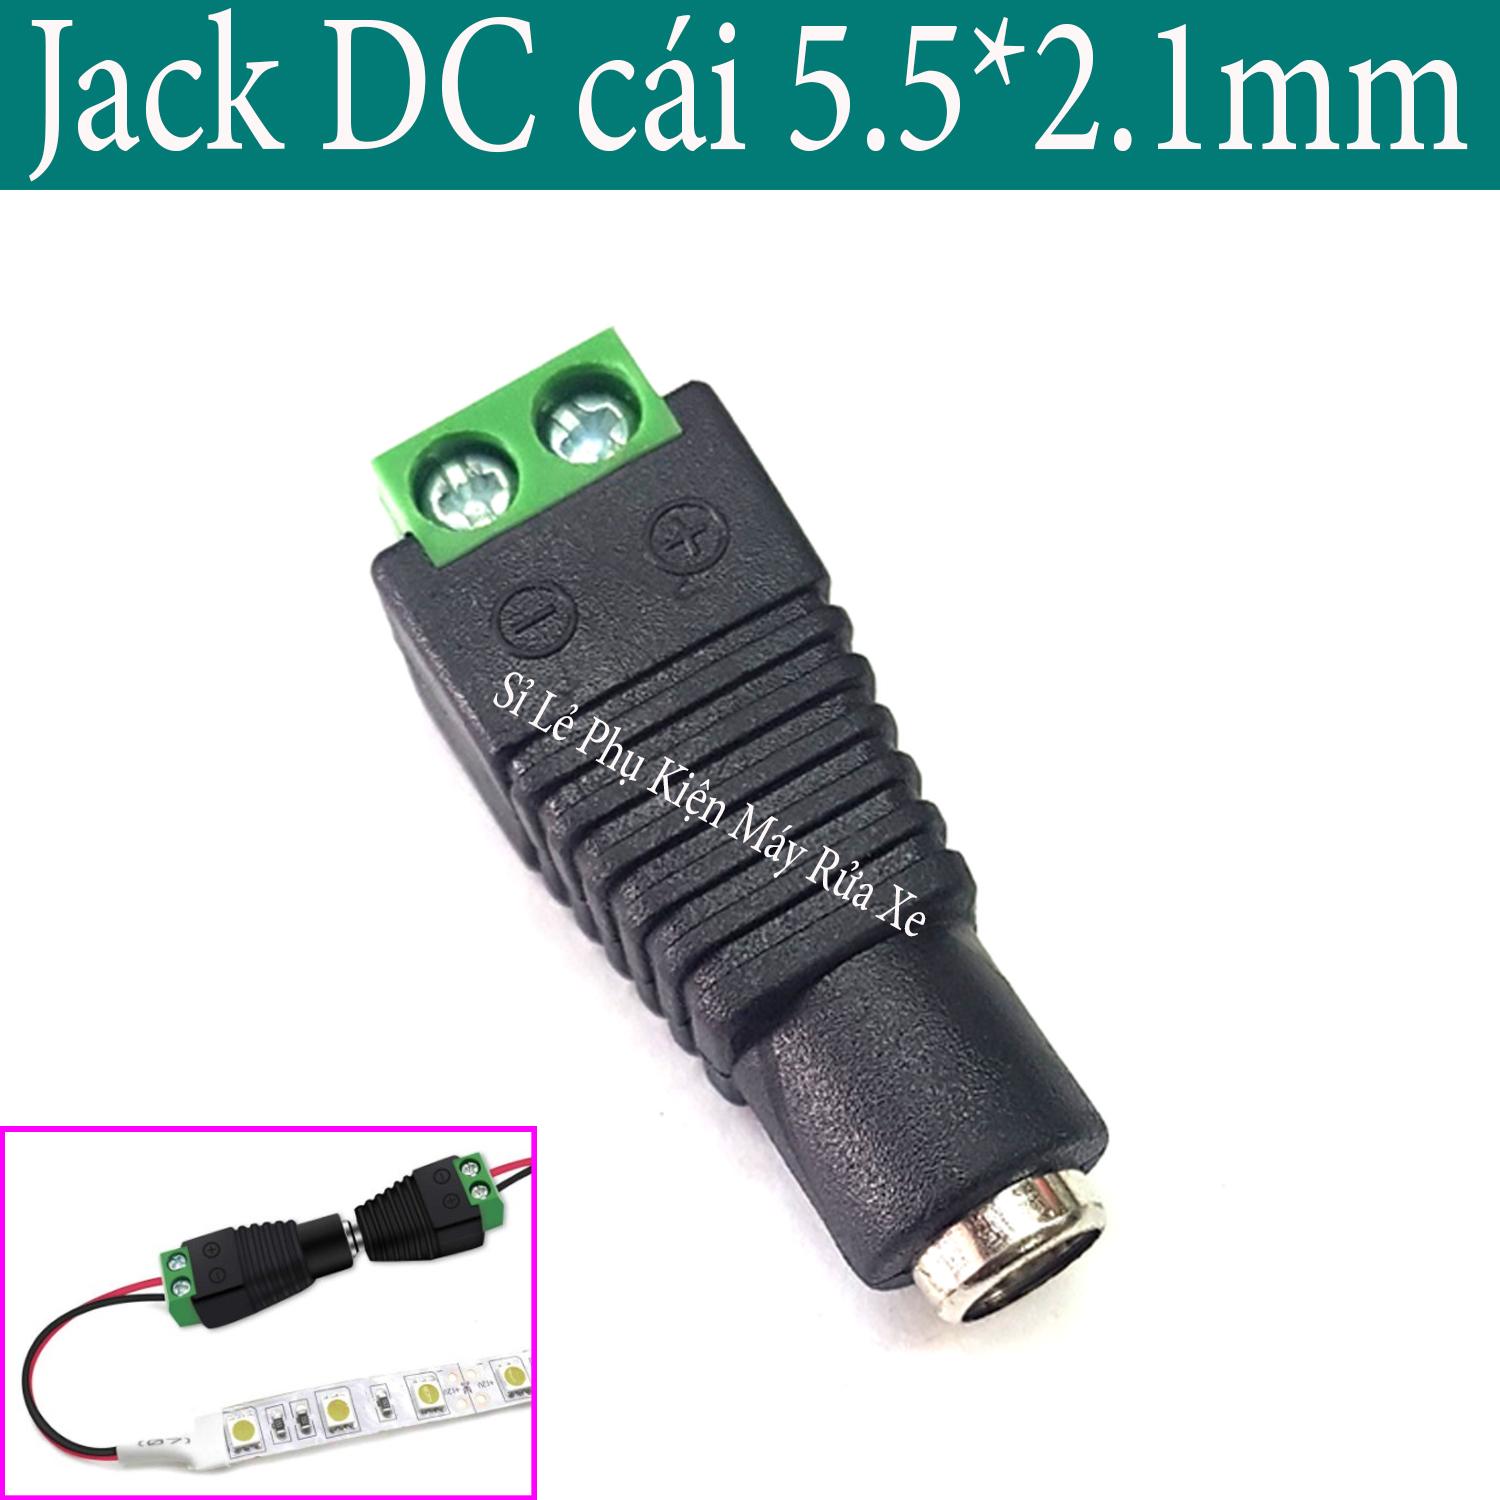 Jack DC cái 5.5*2.1mm - loại bắt vít